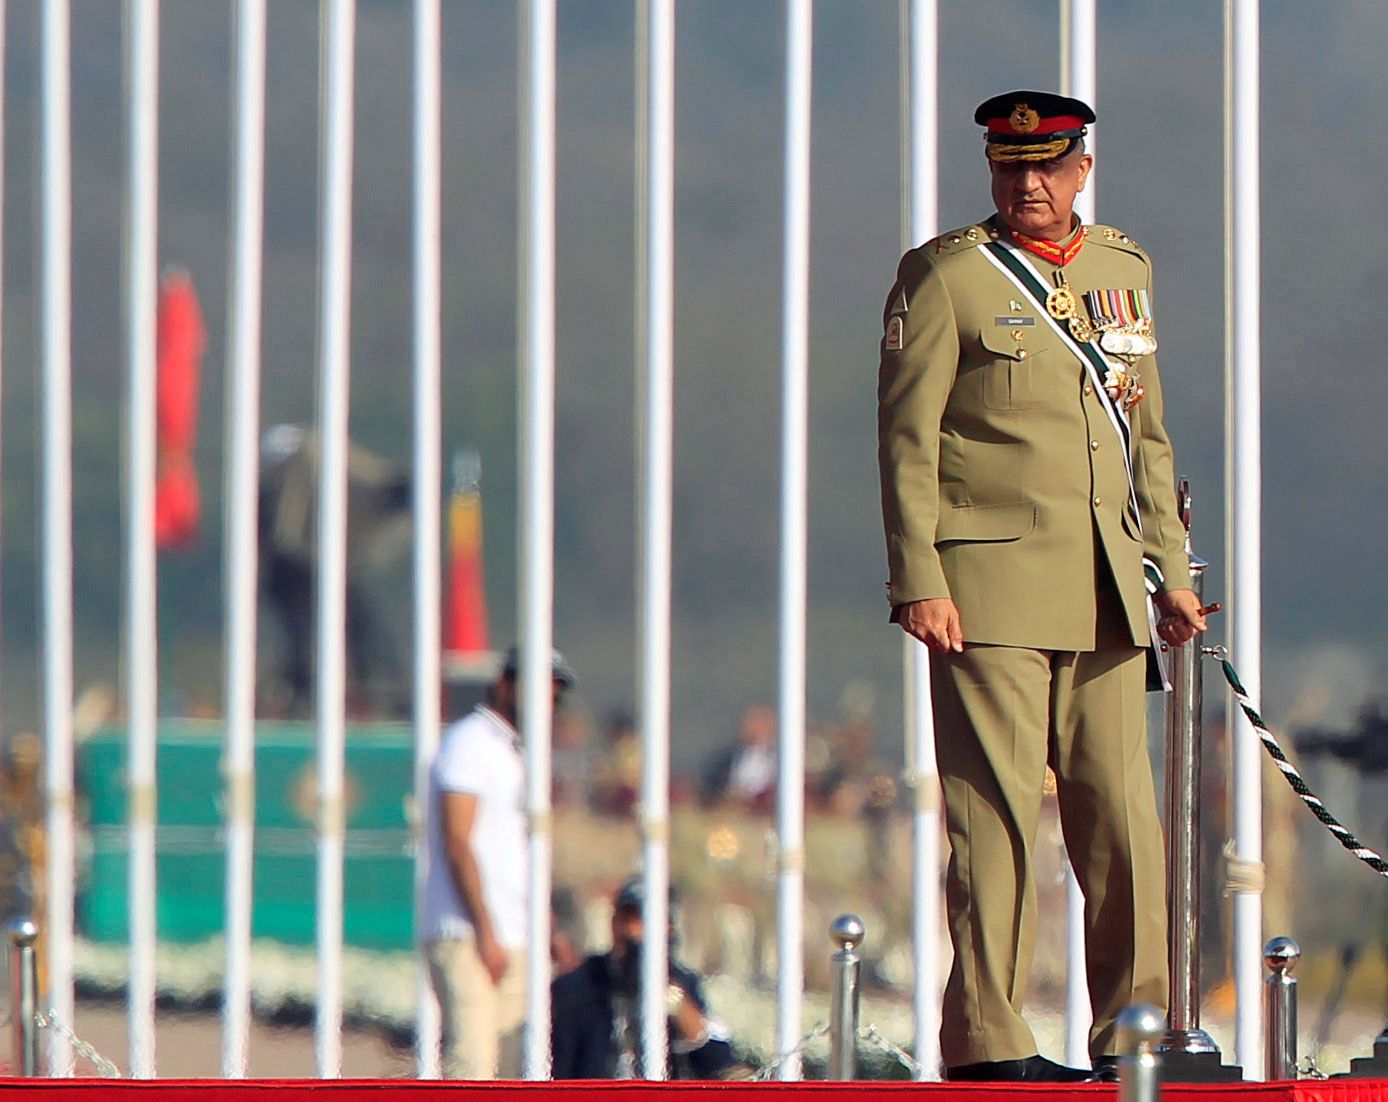 قائد الجيش الباكستاني الجنرال قمر جاويد باجوا خلال عرض عسكري في إسلام آباد - 23 مارس 2017 - REUTERS